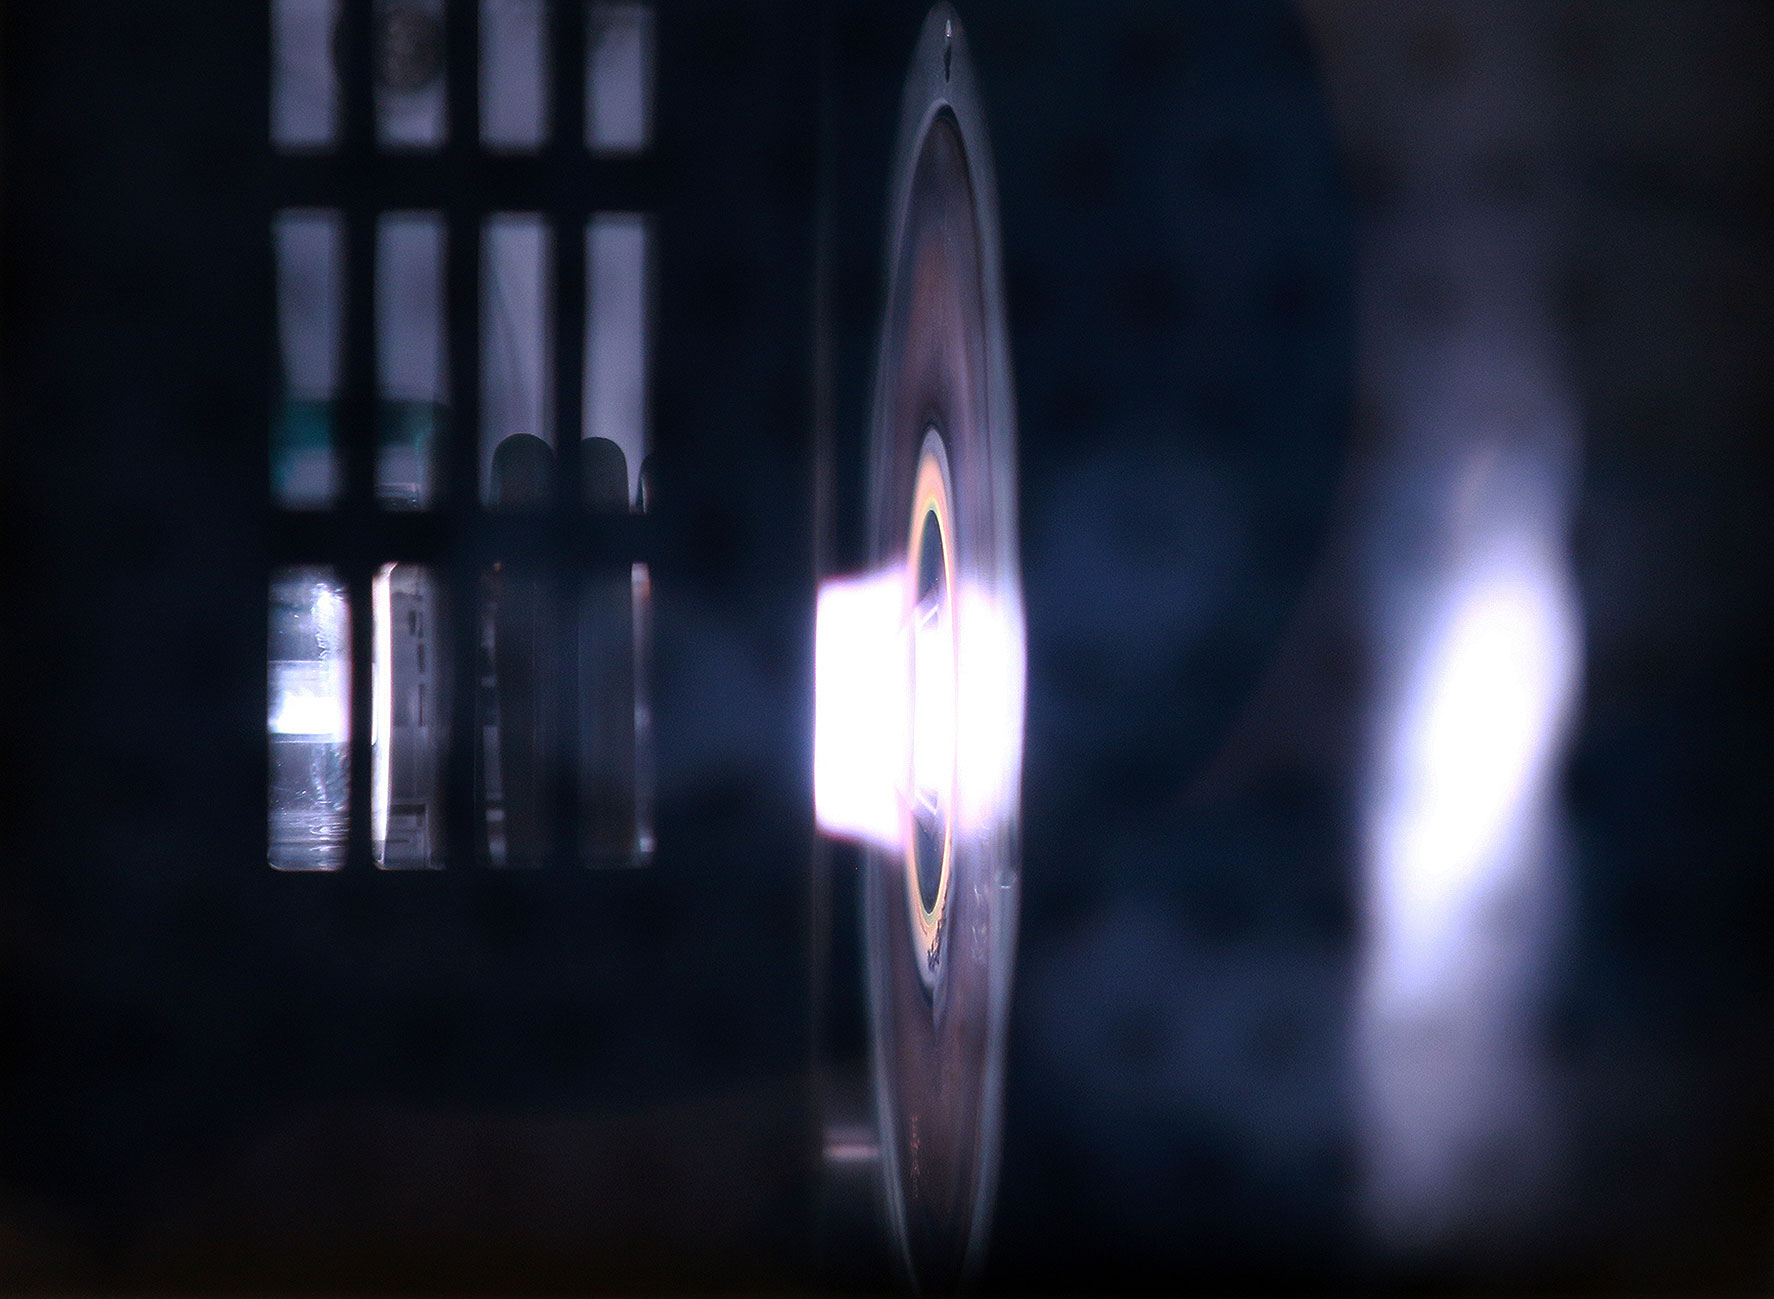 Das Foto zeigt die Brennerdüse im Inneren eines ICP-MS-Messgeräts. Aus der Brennerdüse tritt ein heller Lichtkegel.